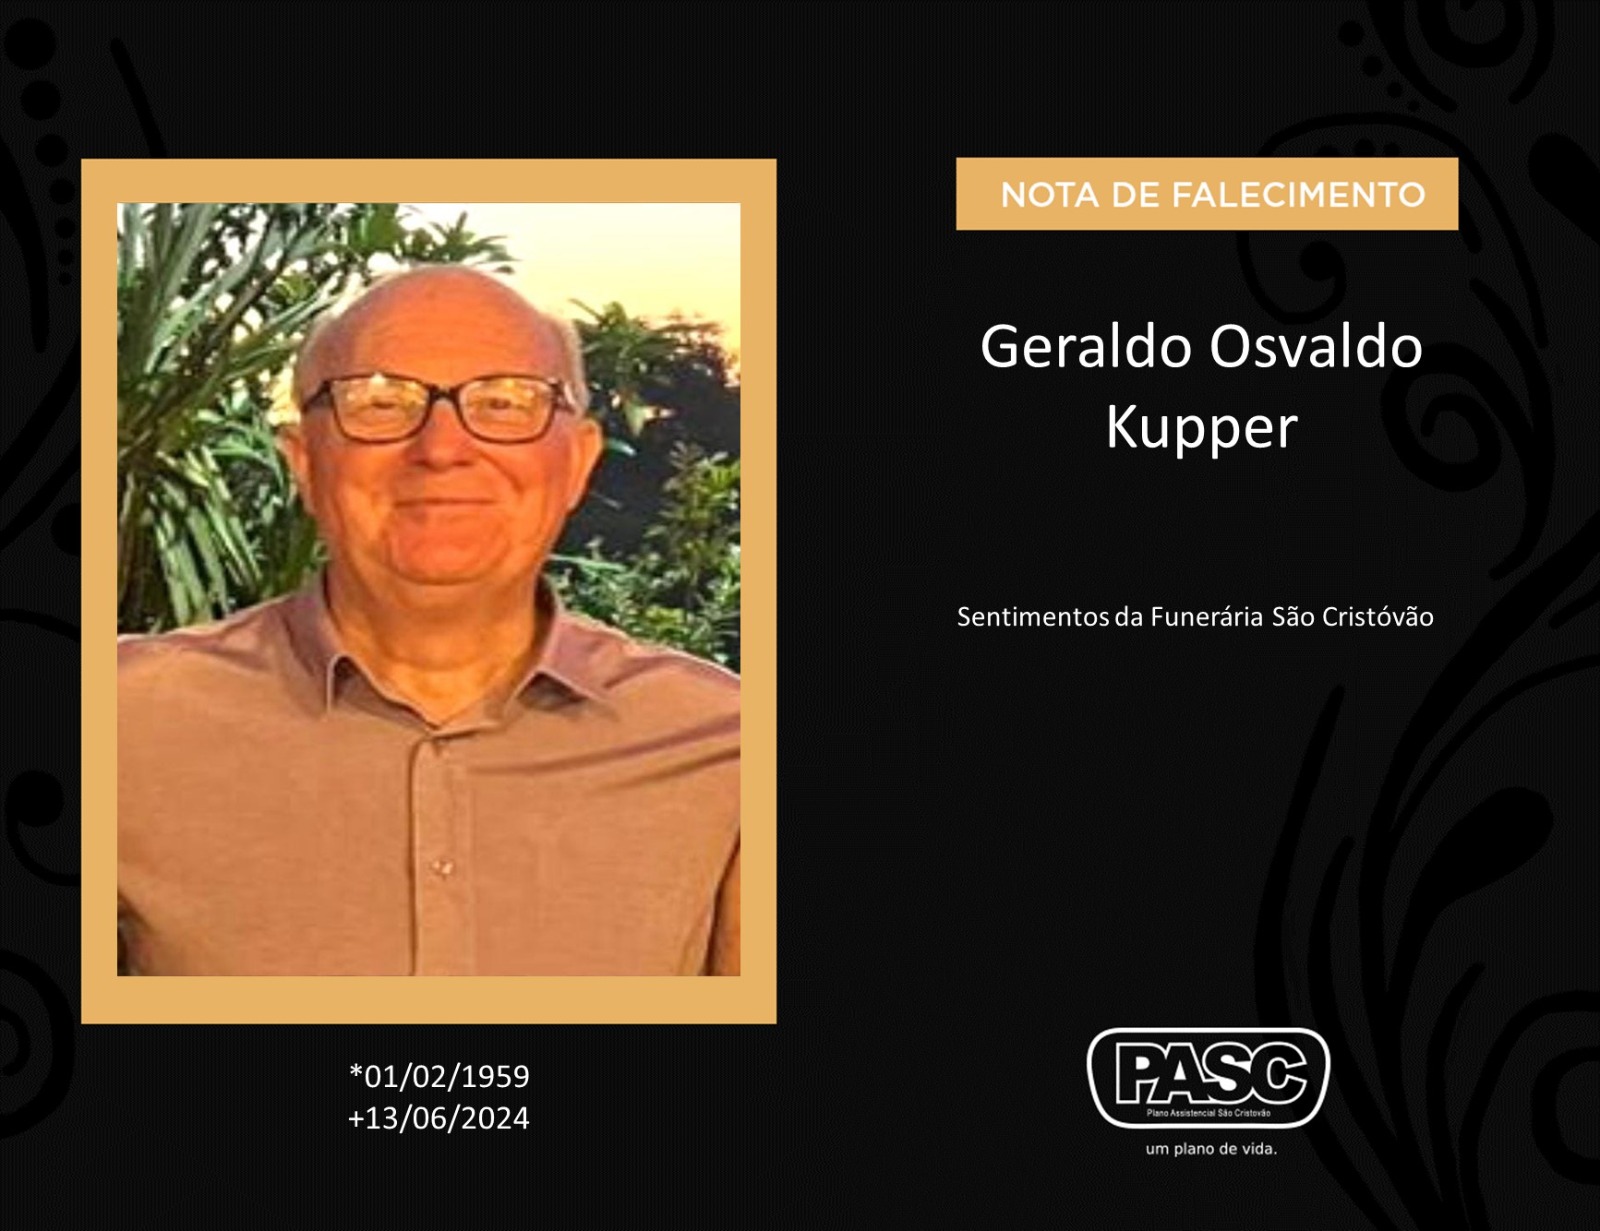 Familiares informam o falecimento do senhor Geraldo Osvaldo Kupper